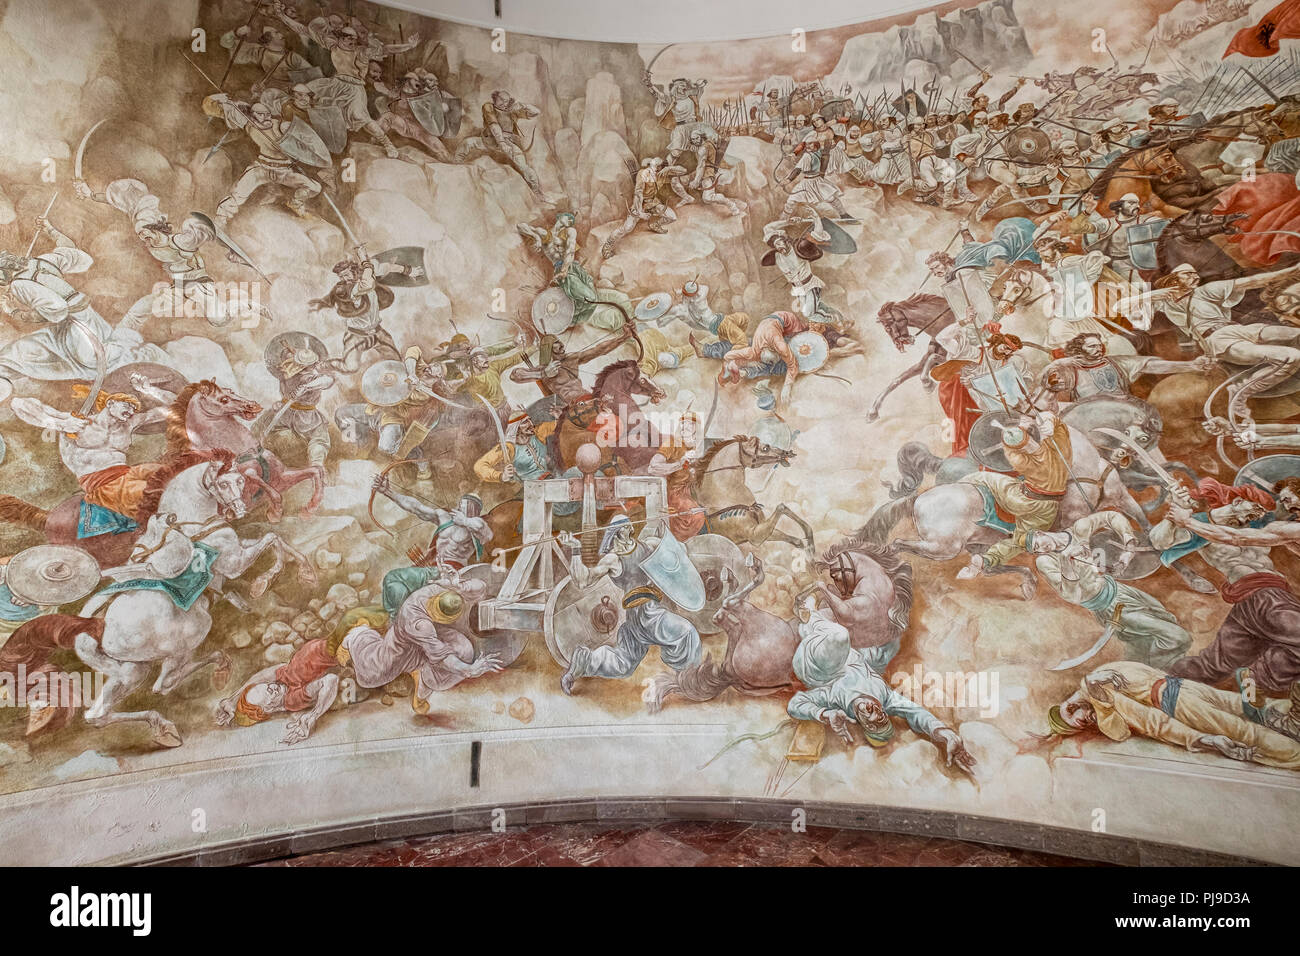 Peinture monumentale de la bataille de 1444 contre les Ottomans, Musée de Skanderbeg, Kruja, Krujë, Durrës Qar, Durres, Albanie Banque D'Images